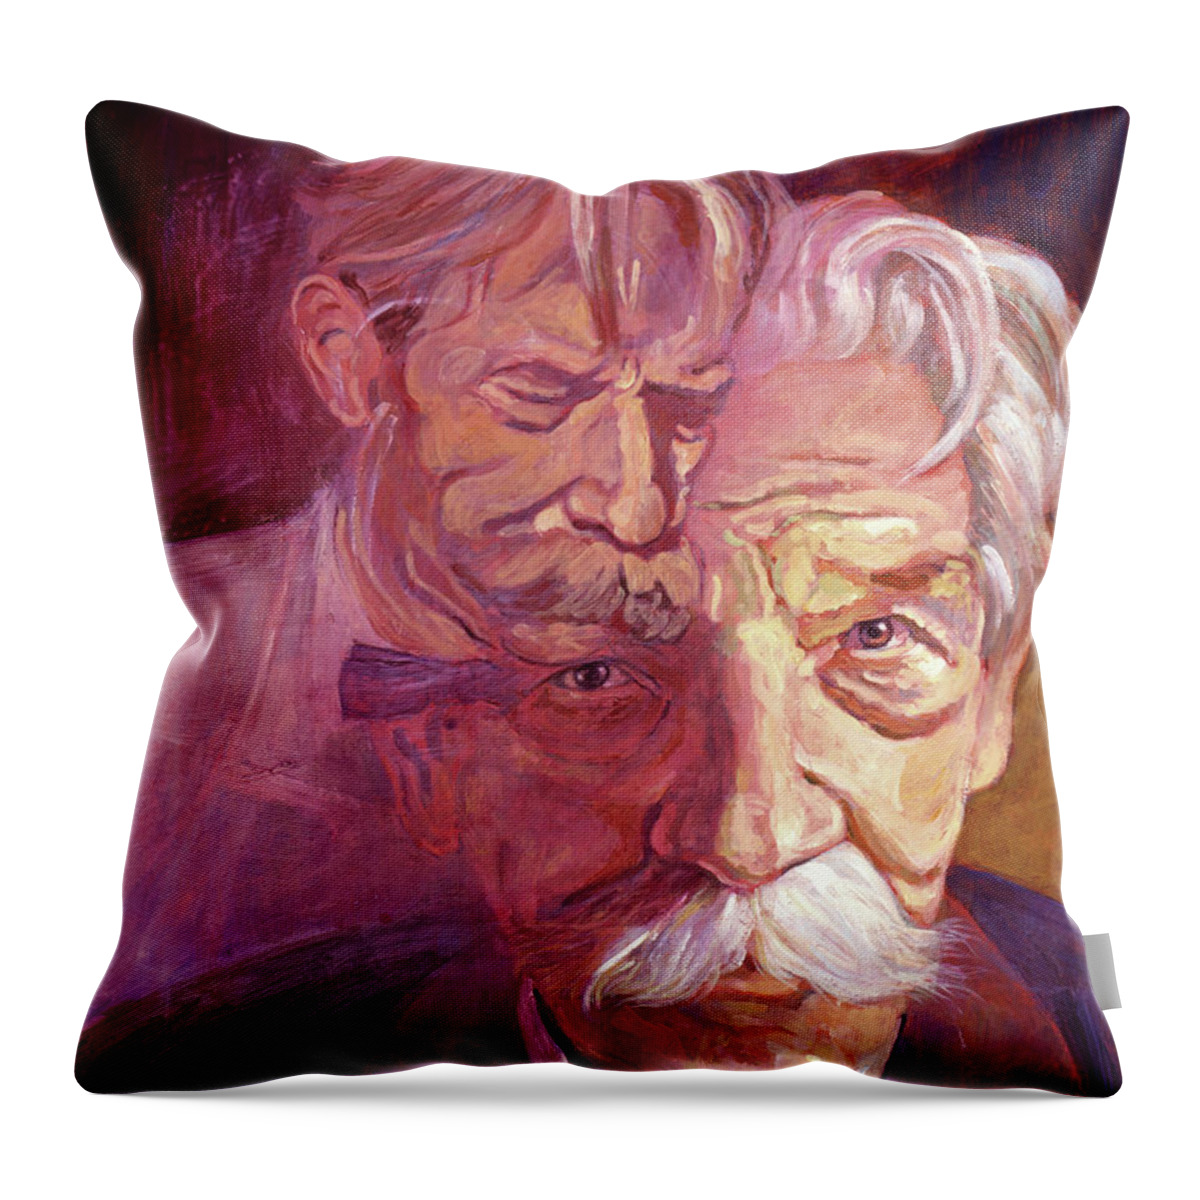 Dr. Schweitzer Throw Pillow featuring the painting ALBERT SCHWEITZER Portrait by David Lloyd Glover